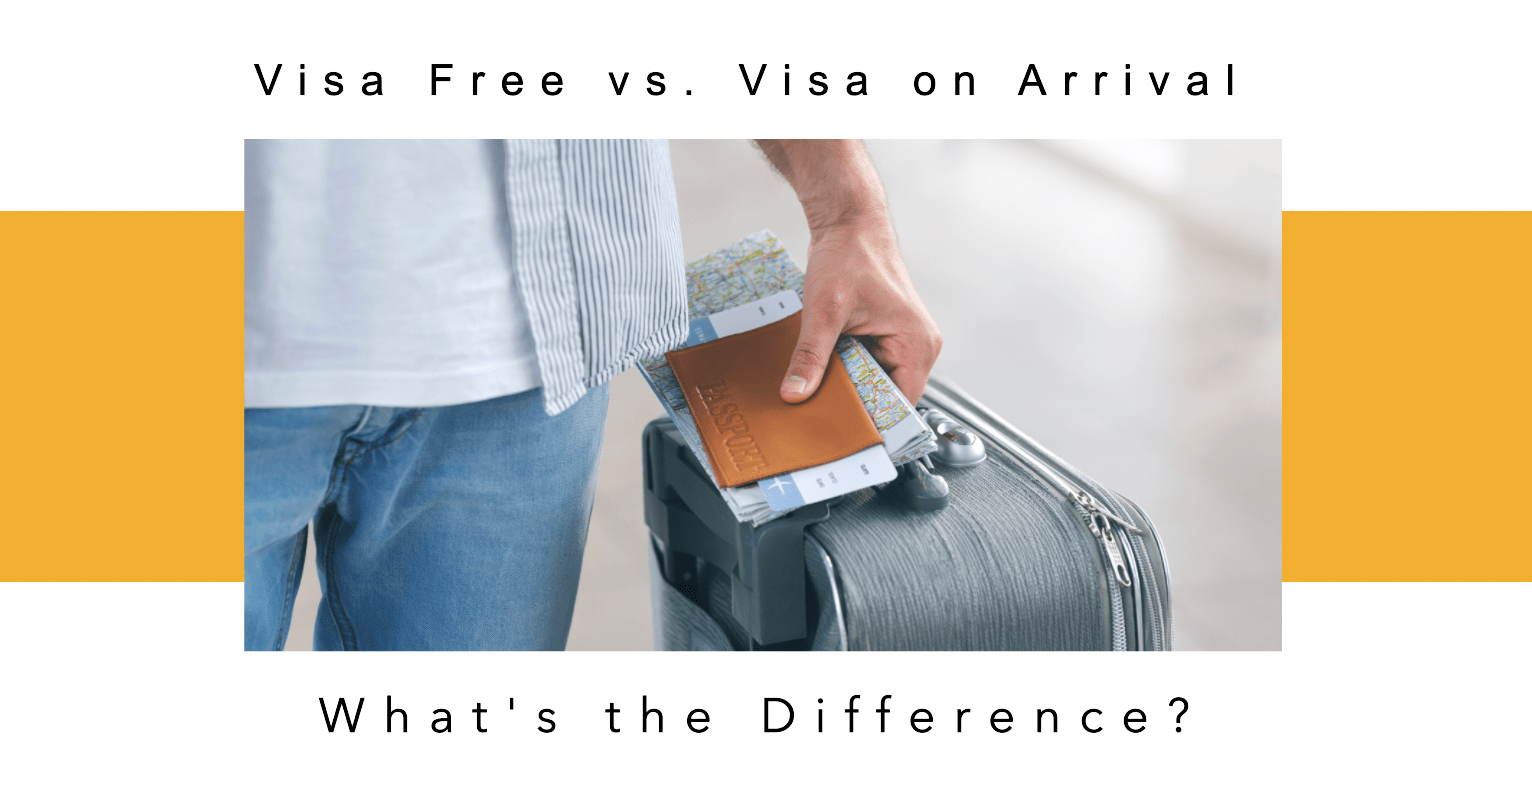 Visa Free vs. Visa on Arrival